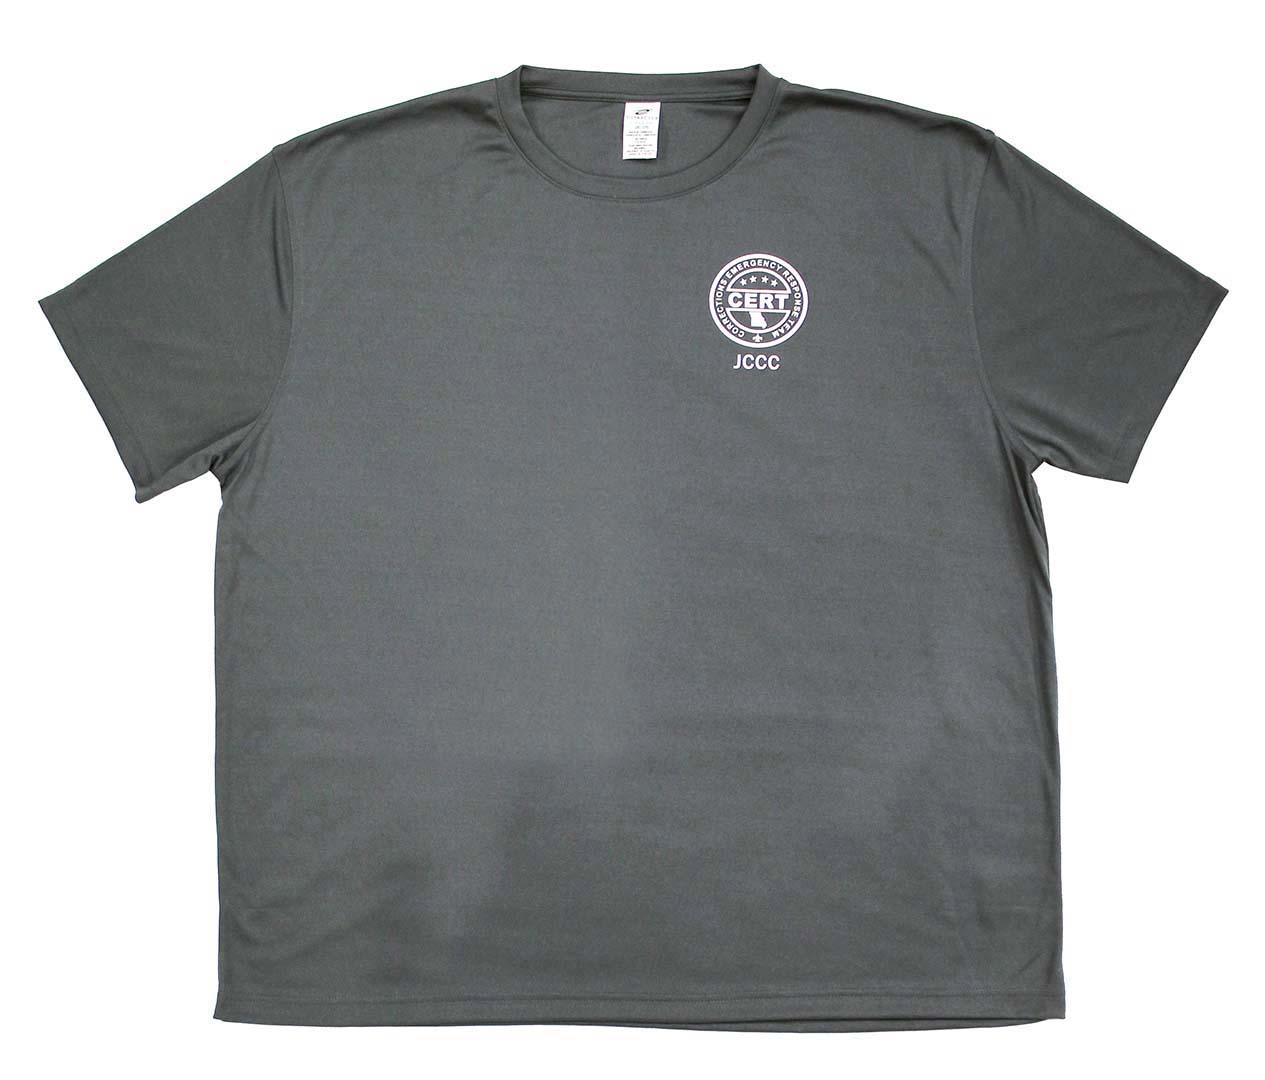 CERT T-Shirt